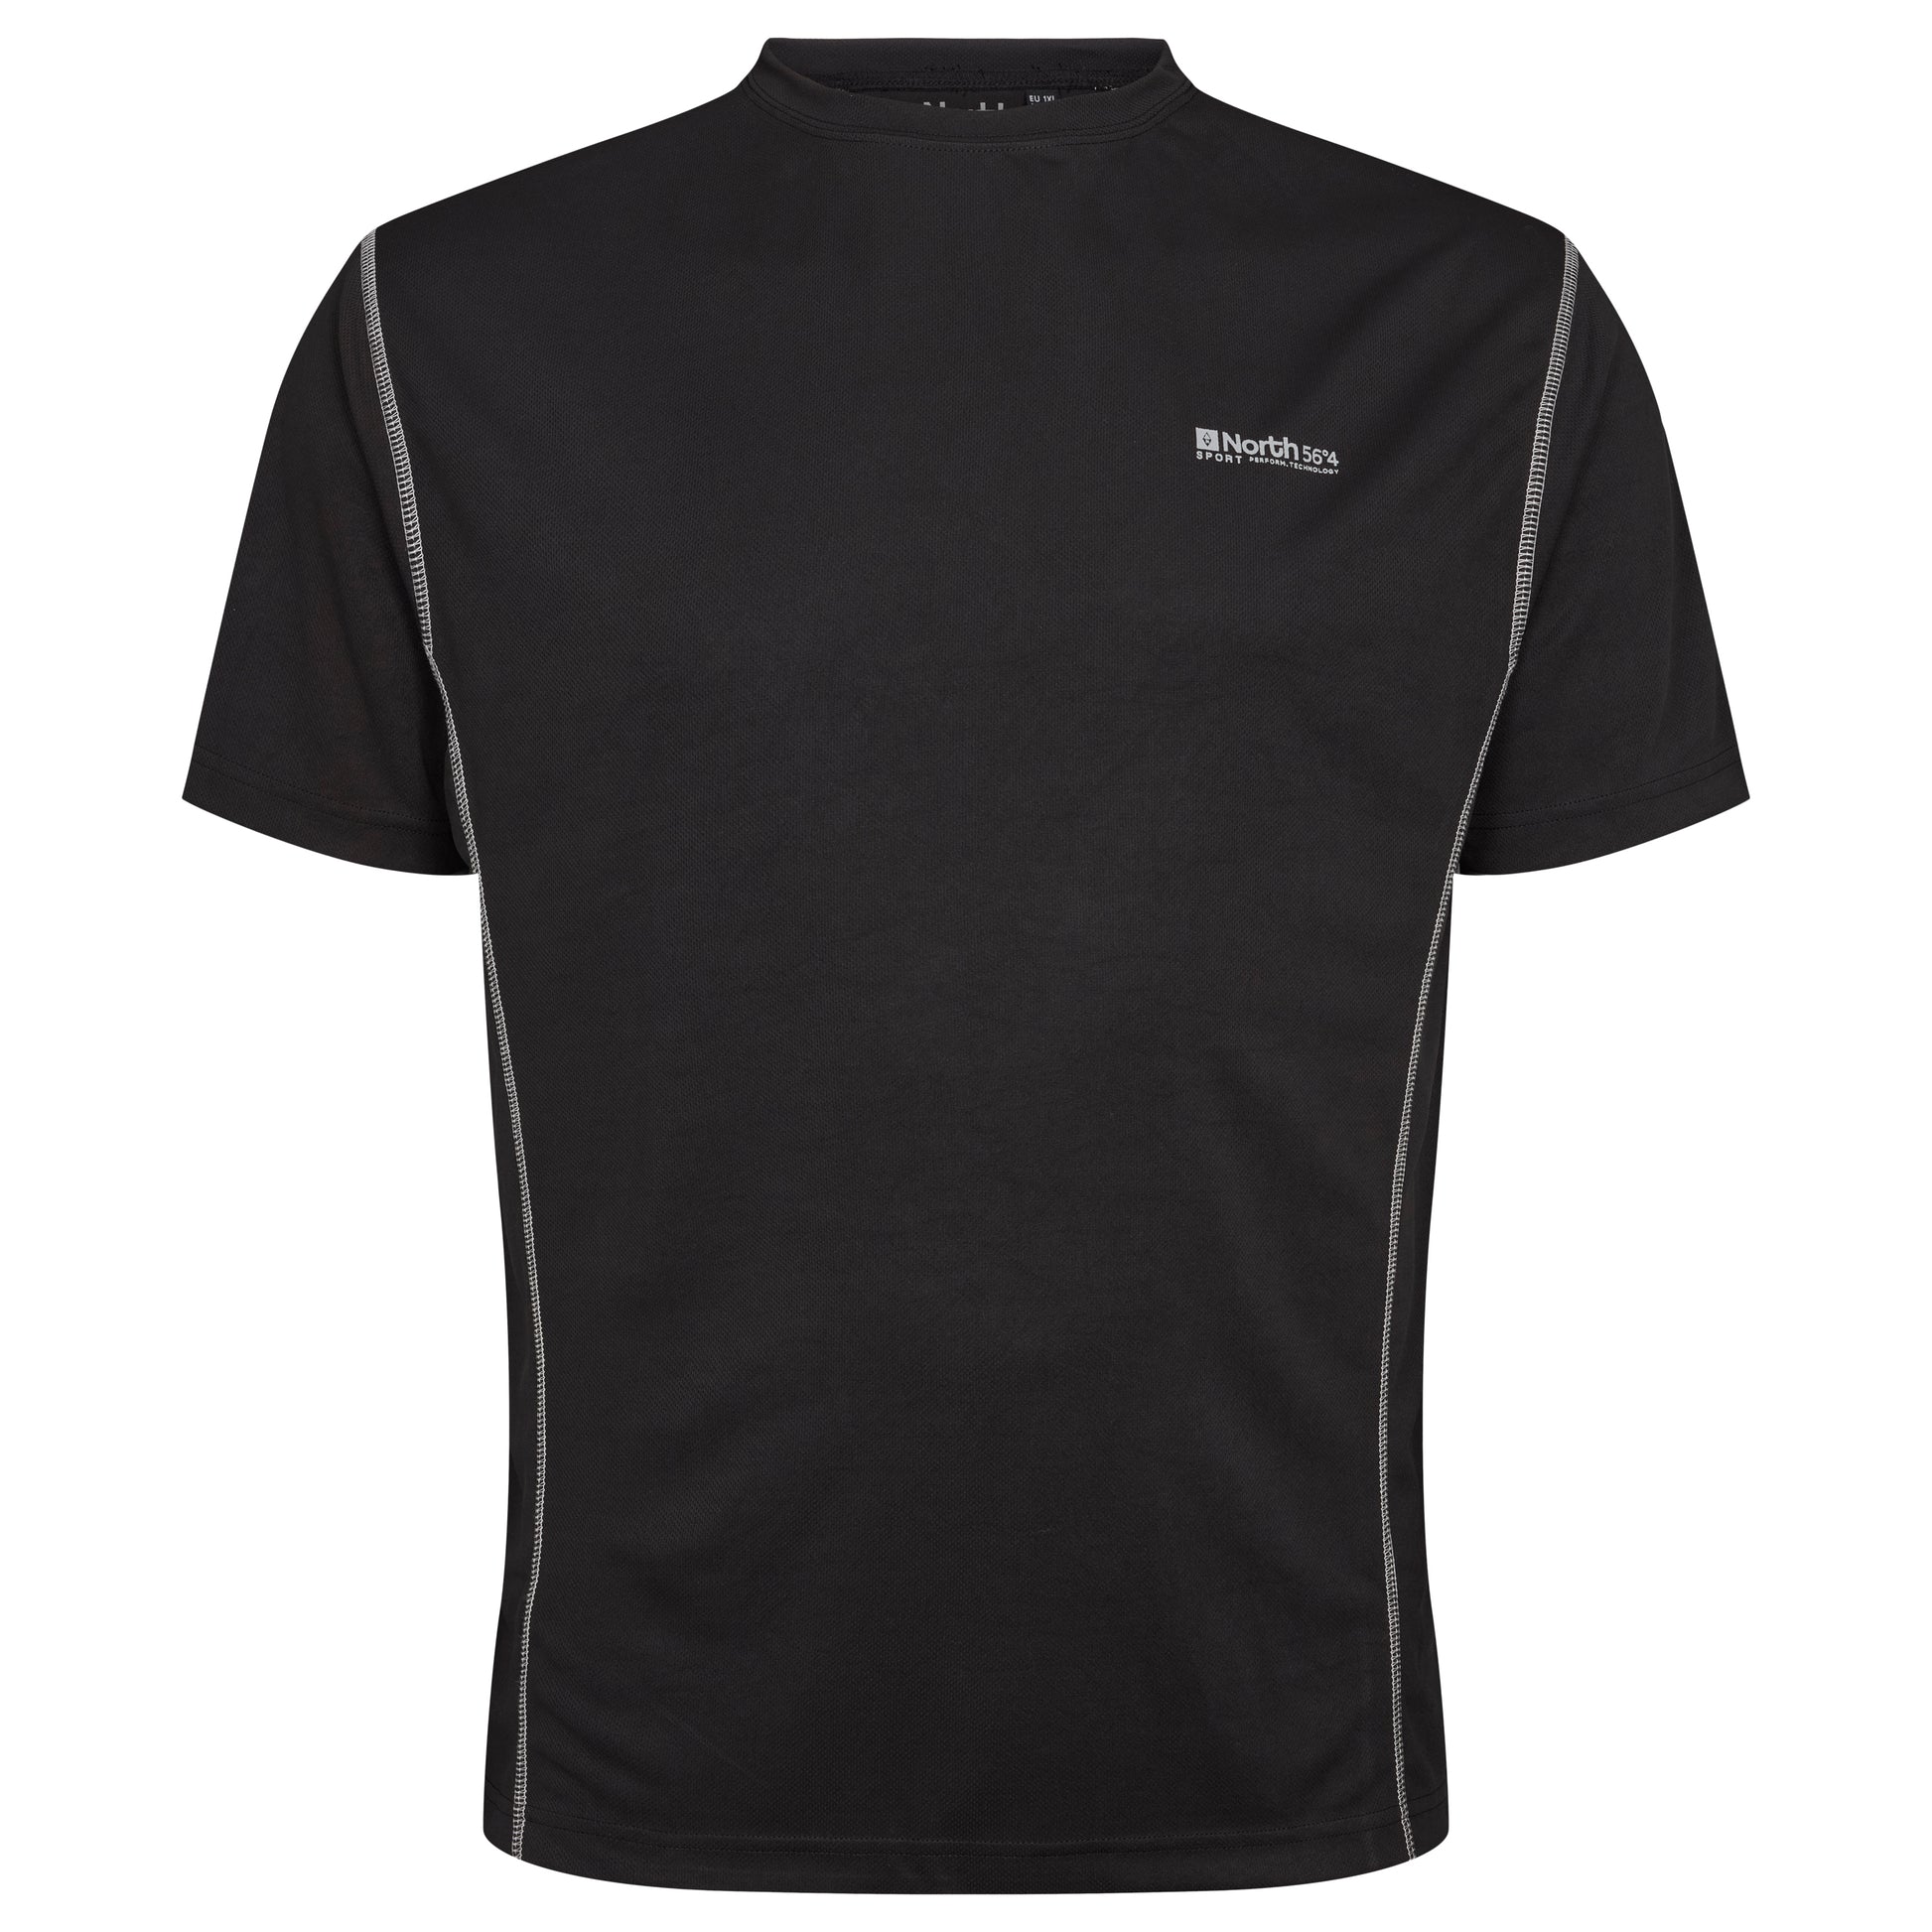 sort teknisk t-skjorte i store størrelsersort teknisk t-skjorte i store størrelser